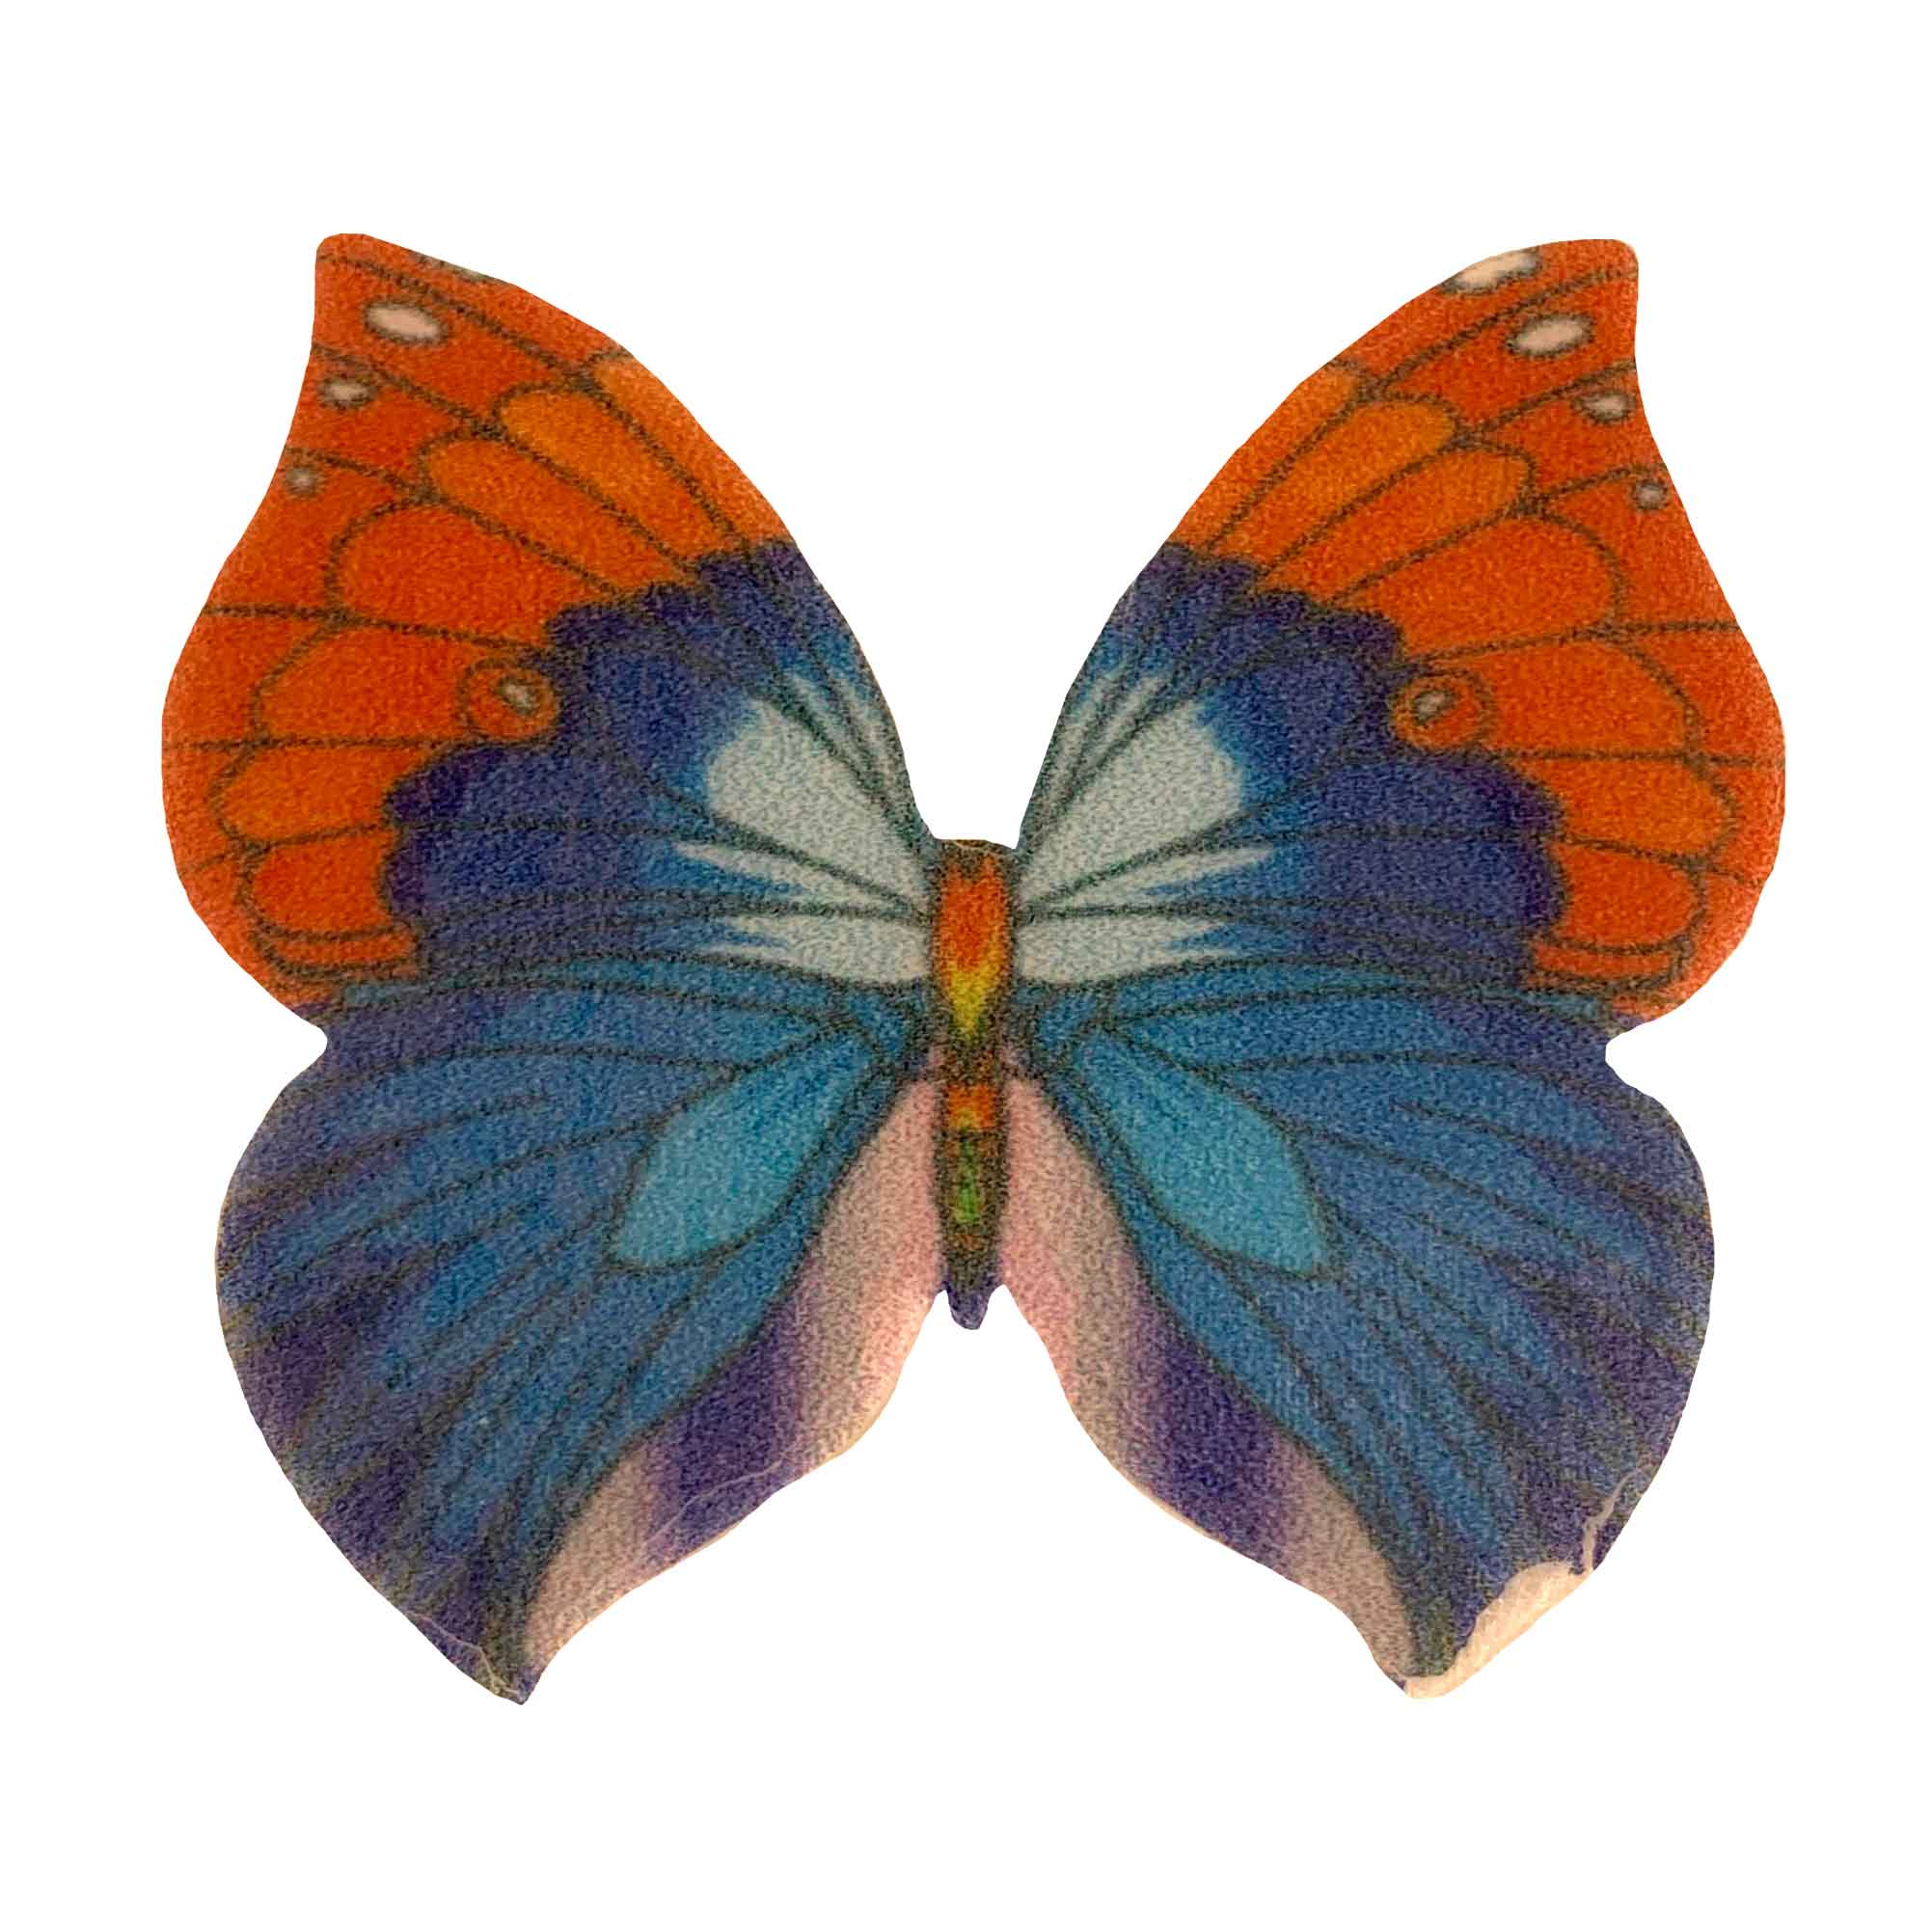 Купить вафельных бабочек. Вафельные бабочки цветные двухсторонние, 180 шт, микс tp59943. Вафельные бабочки. Вафельная картинка бабочки. Вафельные бабочки большие, 39 шт.